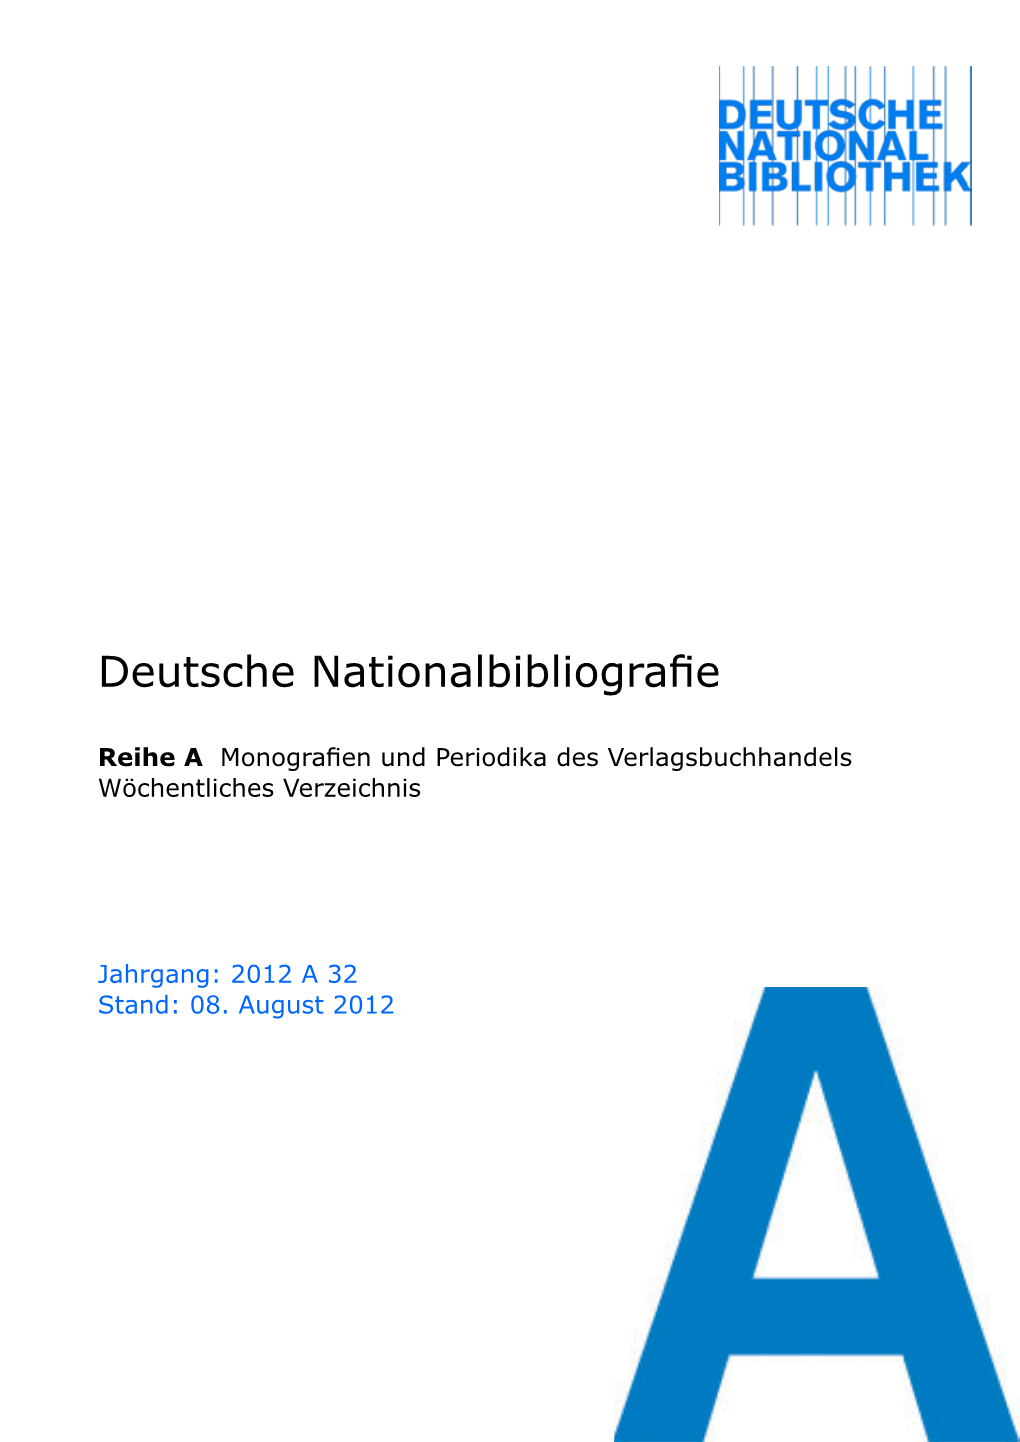 Deutsche Nationalbibliografie 2012 a 32